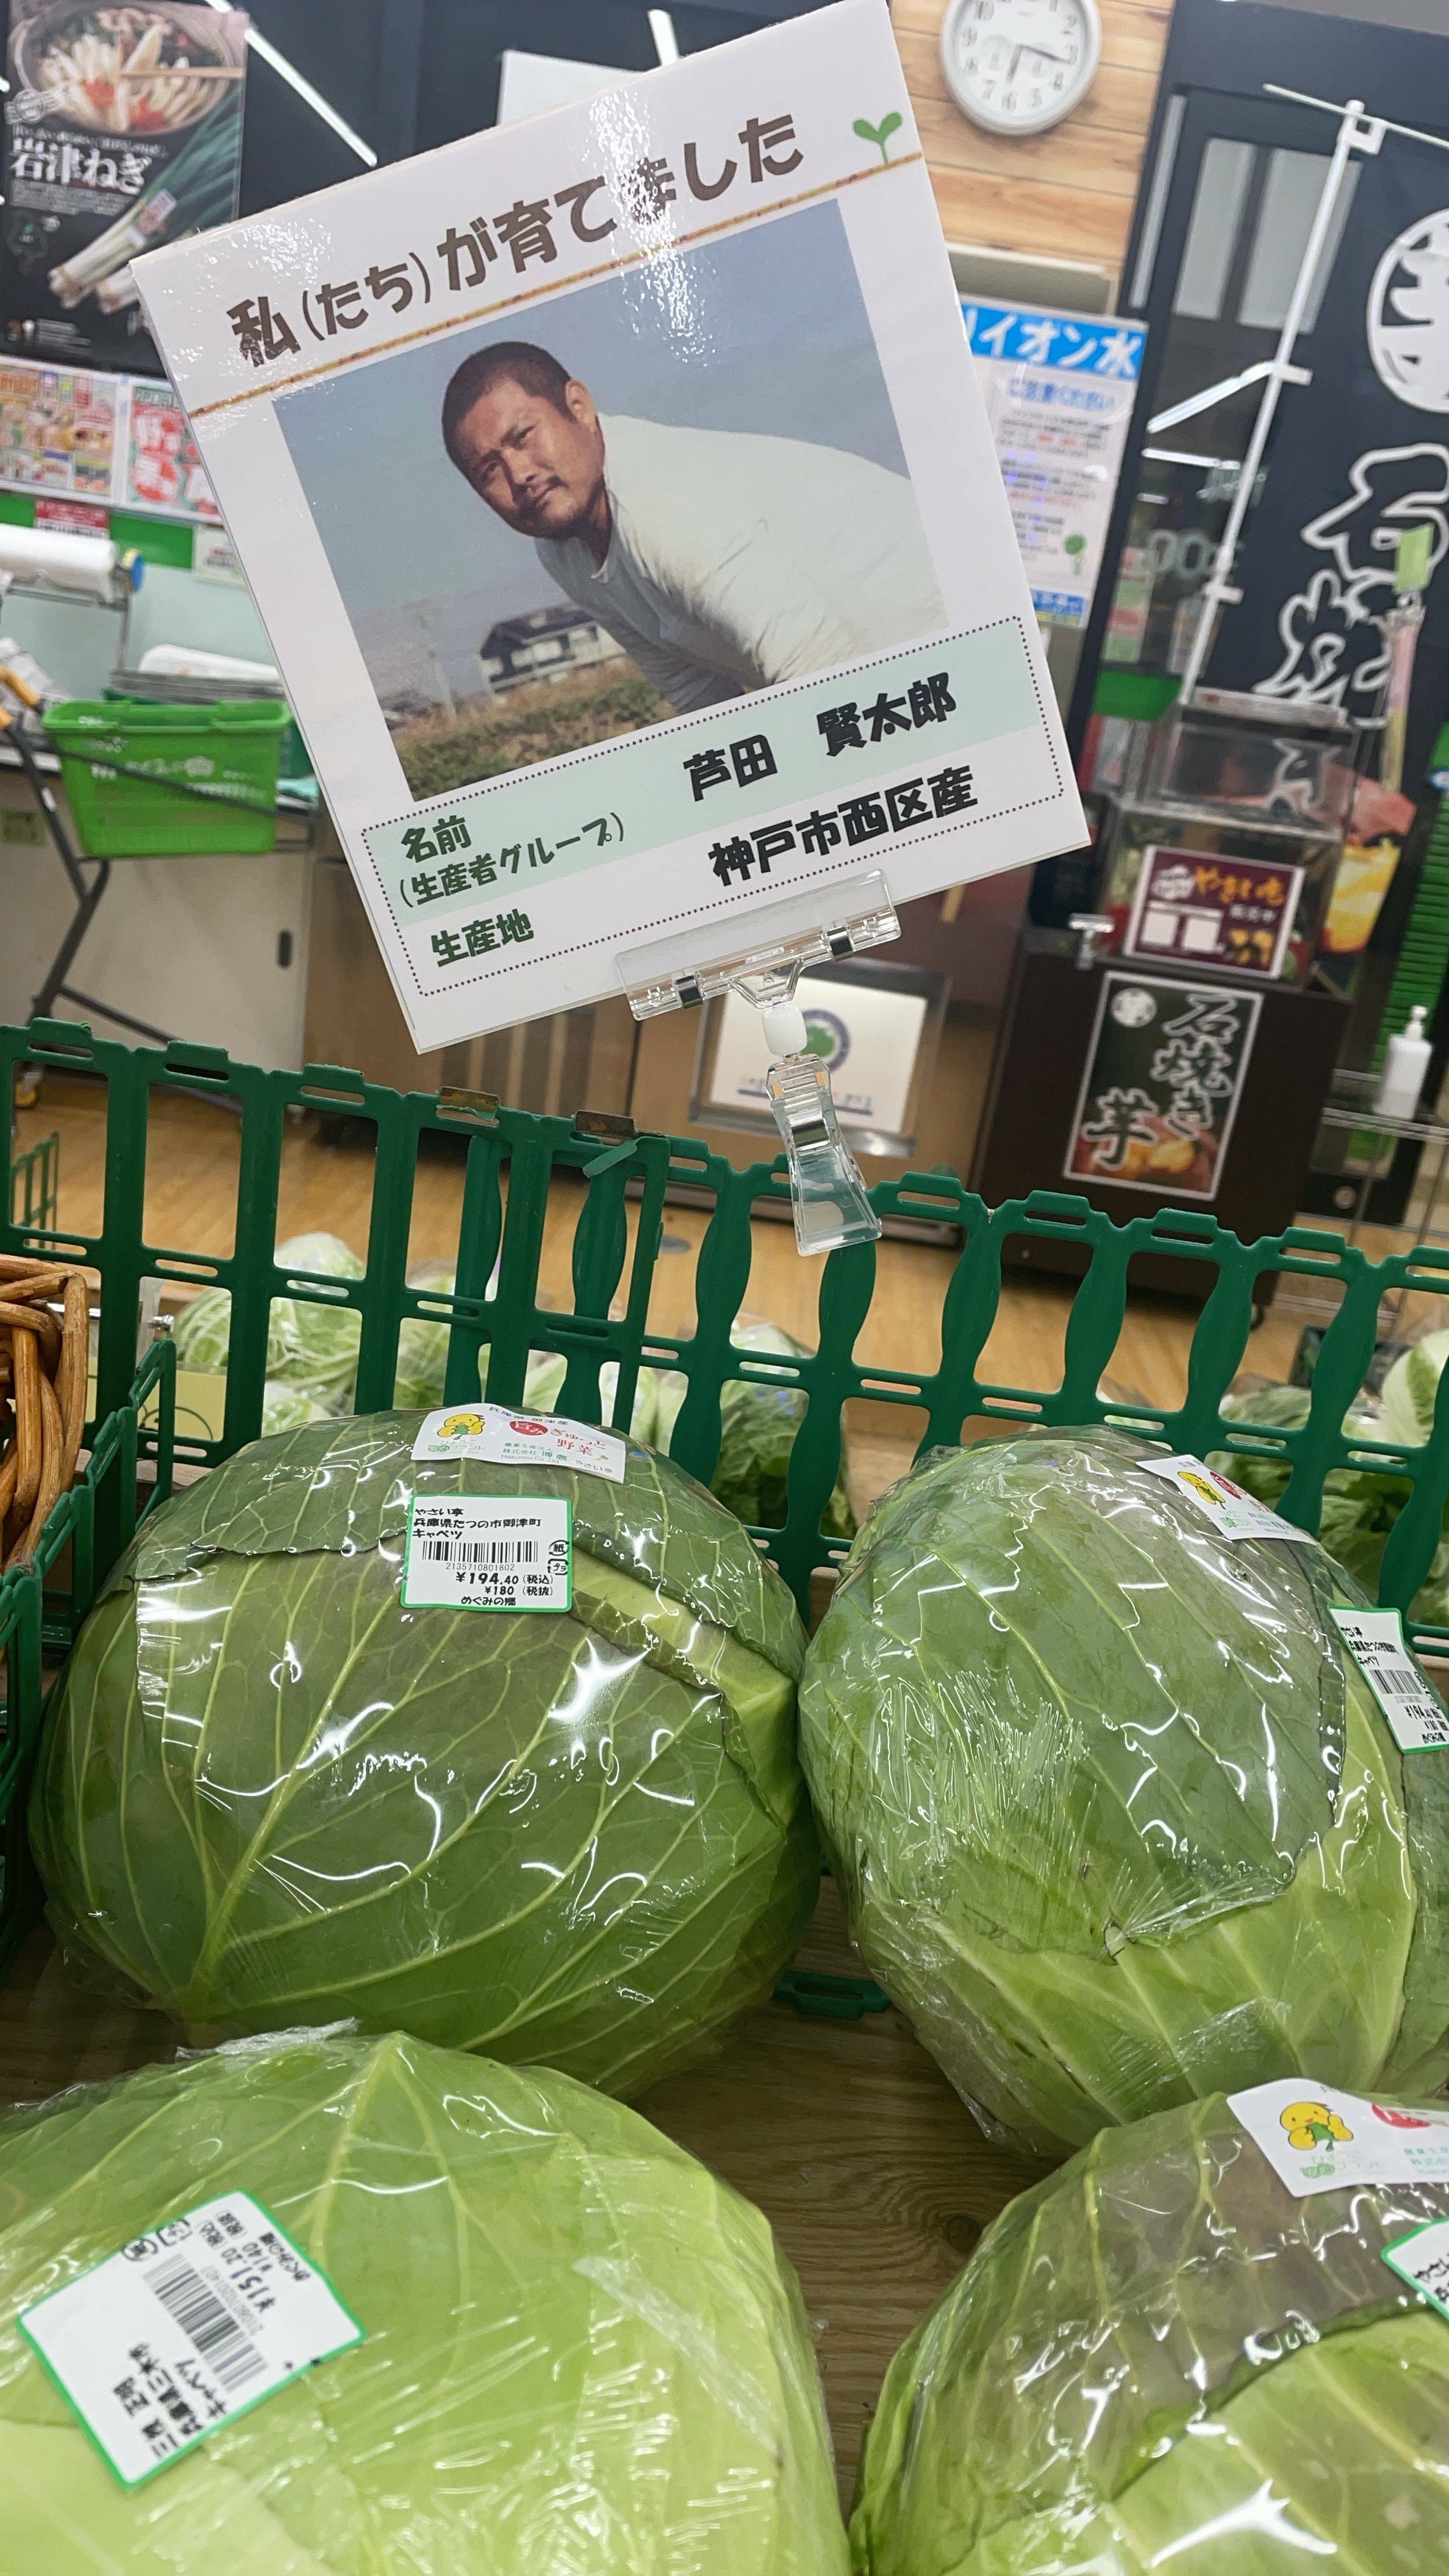 Les magasins de légumes ici montrent une photo de l'agriculteur.